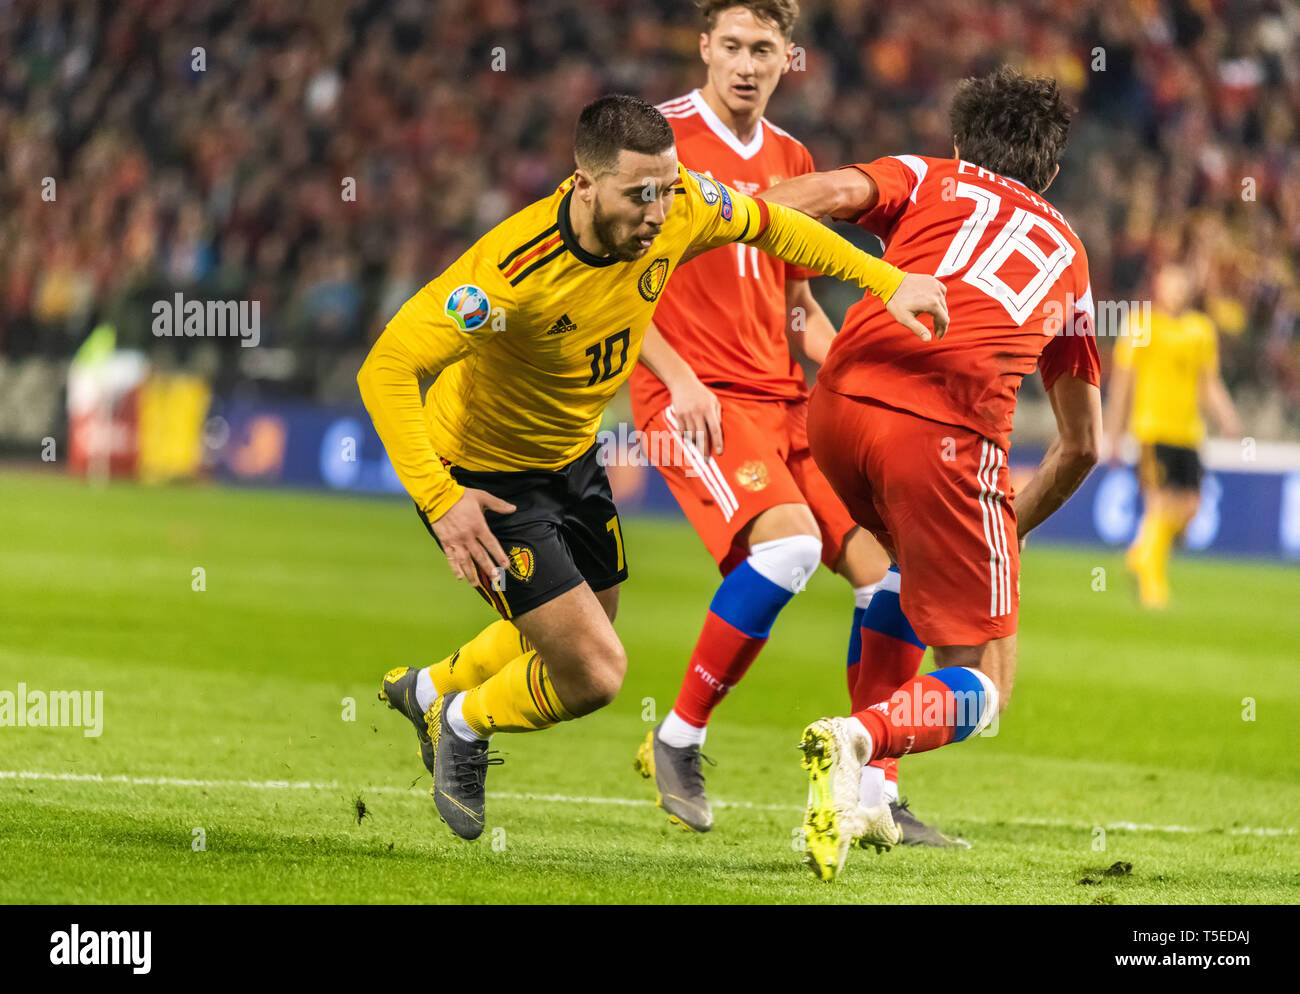 Brüssel, Belgien - 21. März 2019. Russland Nationalmannschaft Verteidiger Yuri Zhirkov begeht ein Foul auf Belgien National Football Team Captain Eden Hazard Stockfoto